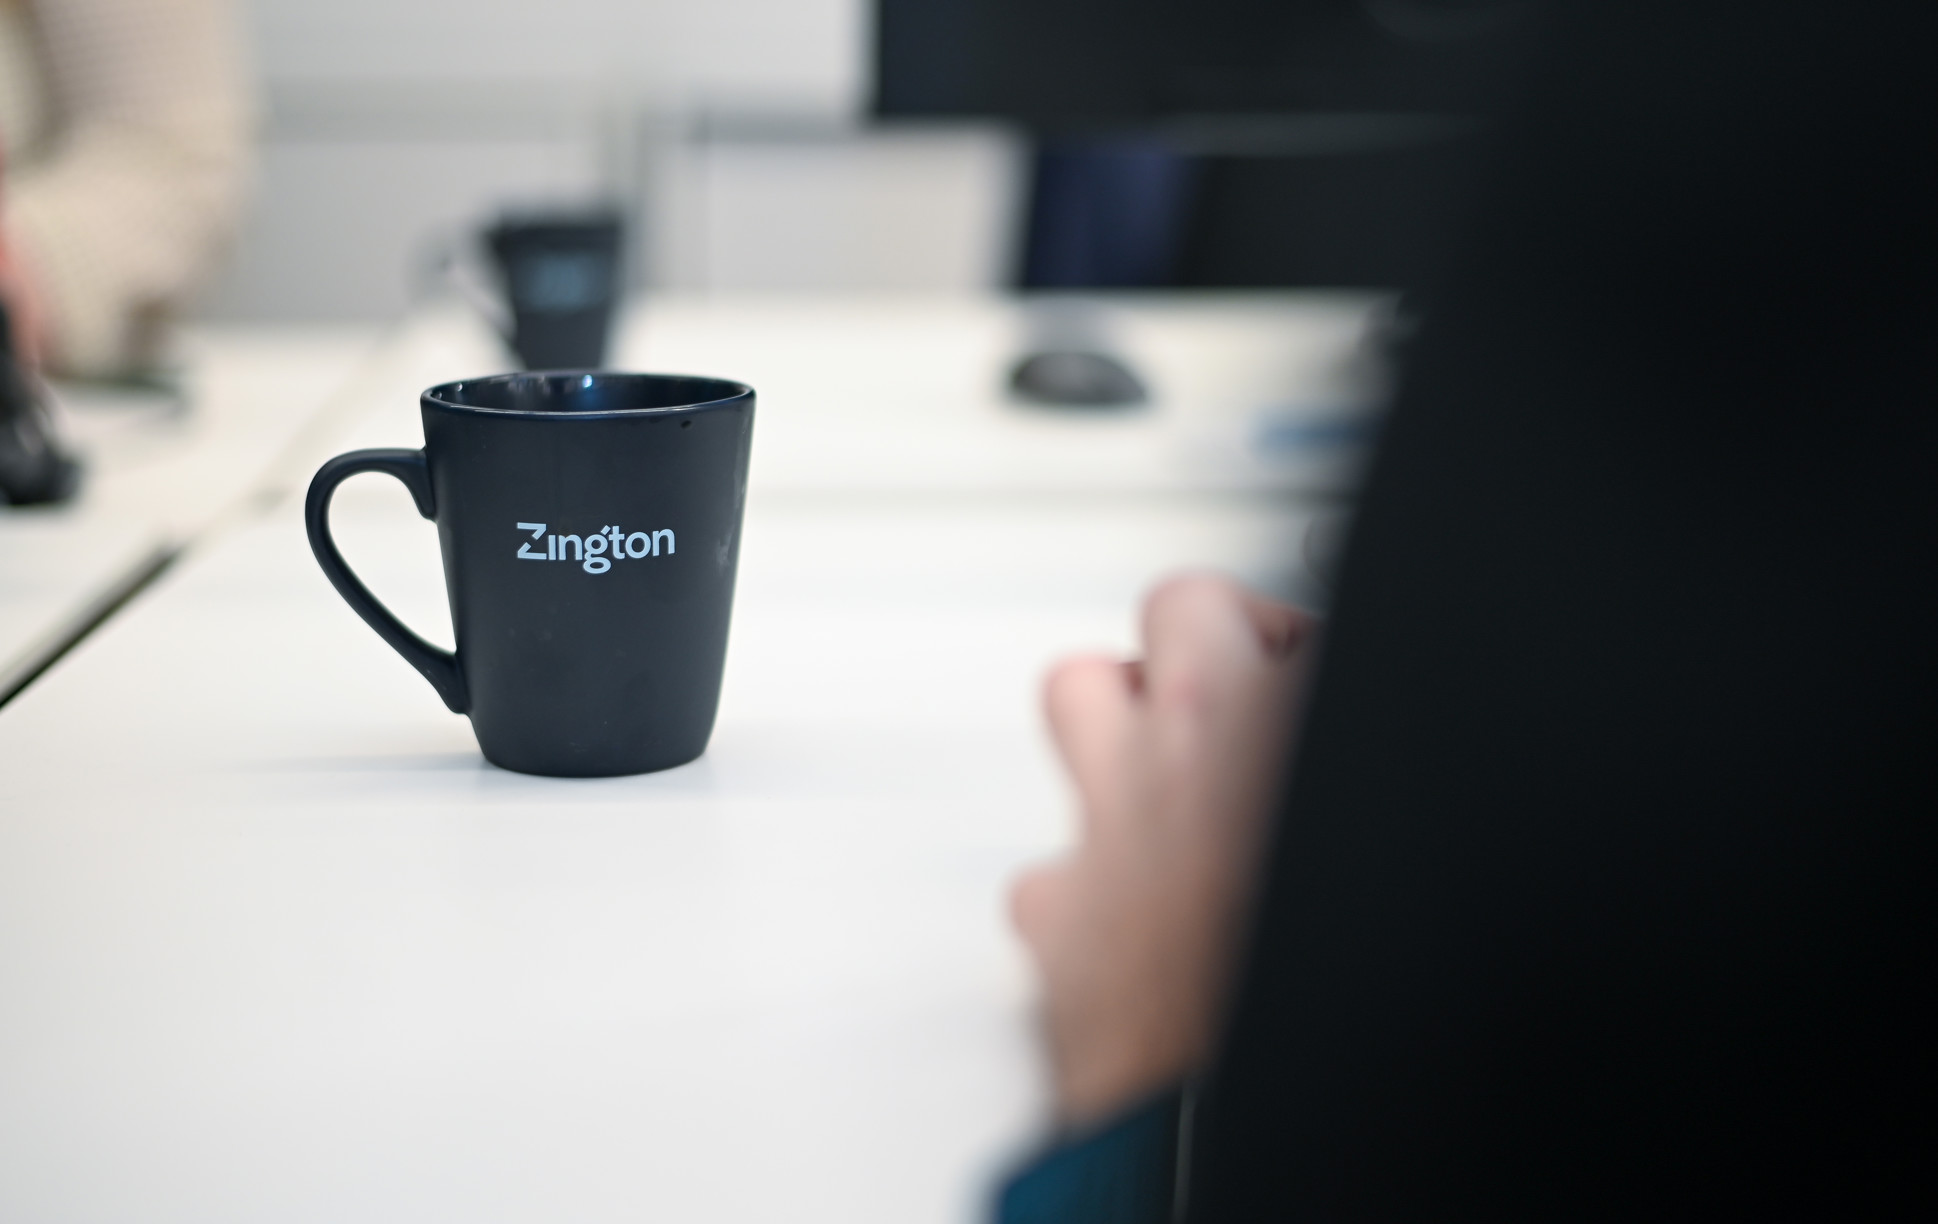 En närbild av en kopp på med zingtons logo.